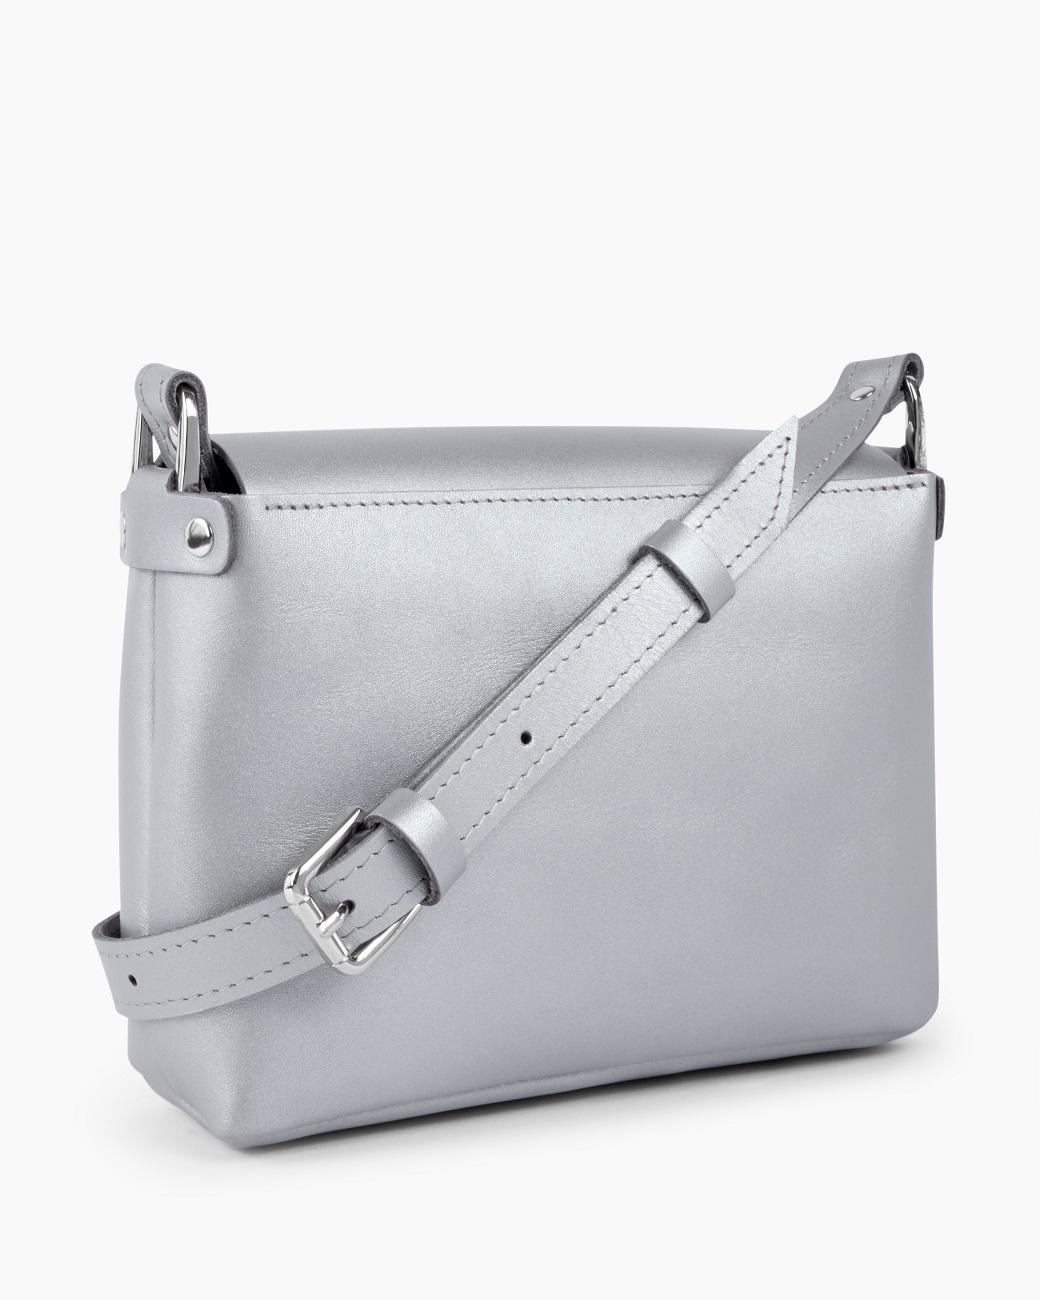 Женская сумка через плечо из натуральной кожи серебро A002 silver